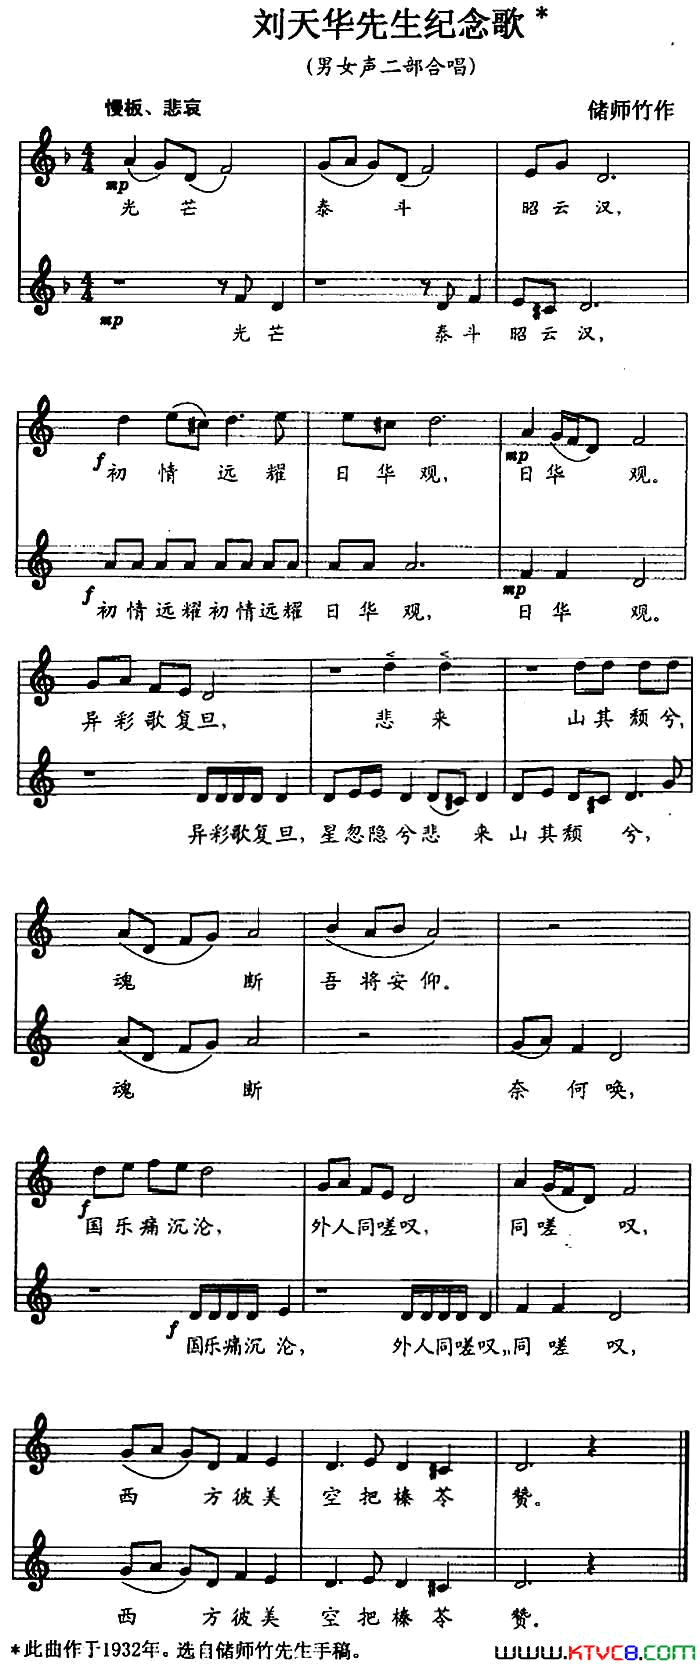 刘天华先生纪念歌男女声二部合唱、五线谱简谱